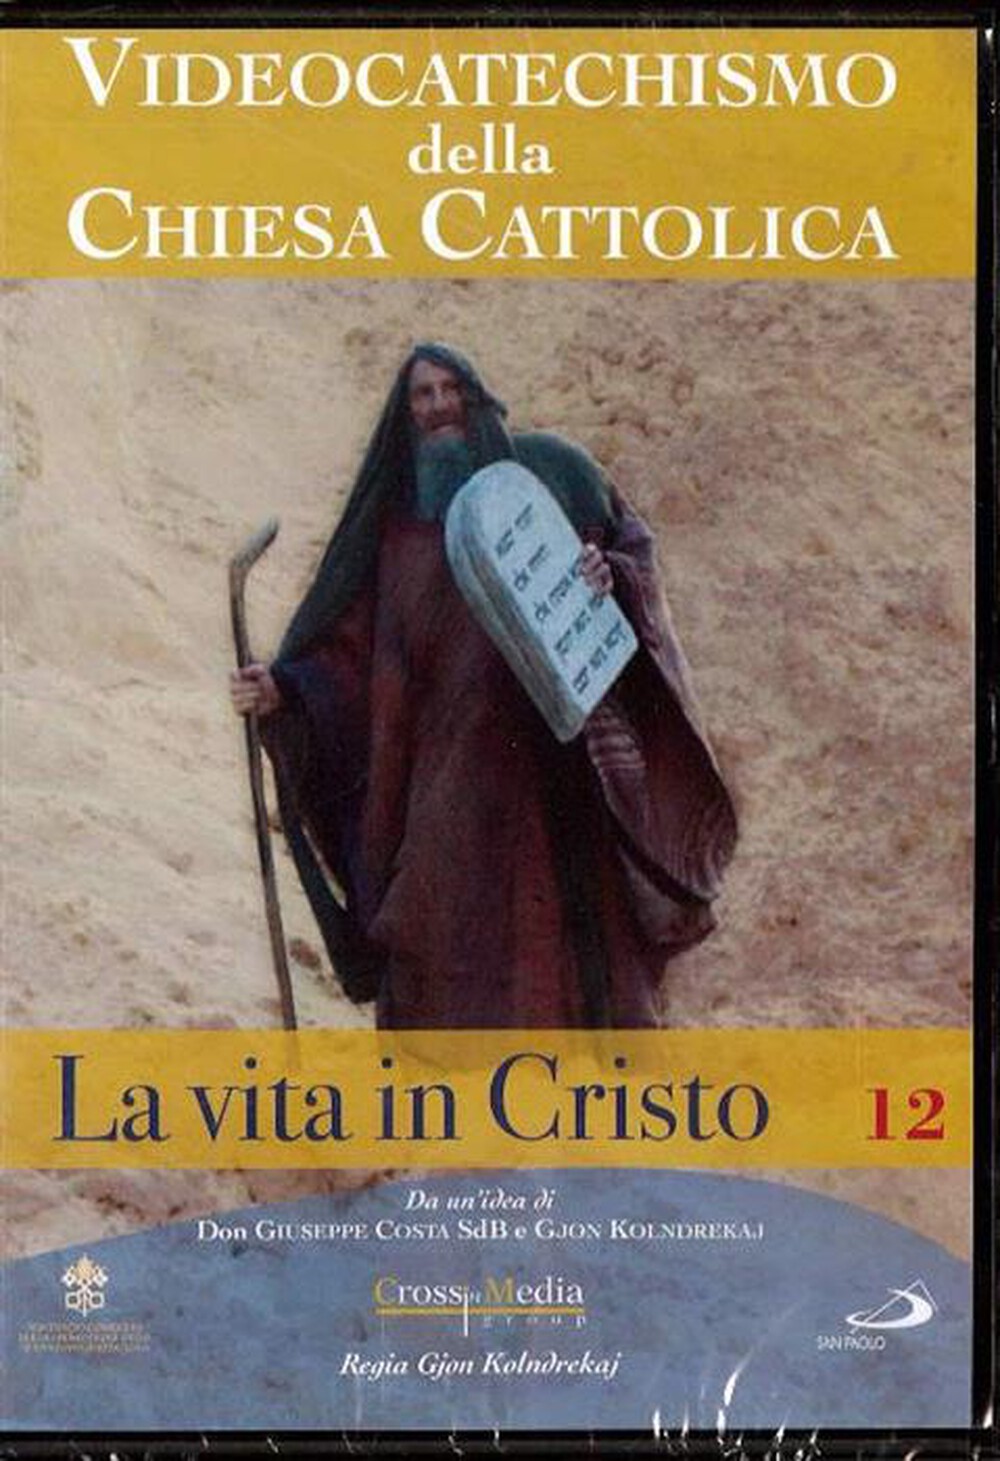 "SAN PAOLO - Videocatechismo #12 - Vita Di Cristo #03"